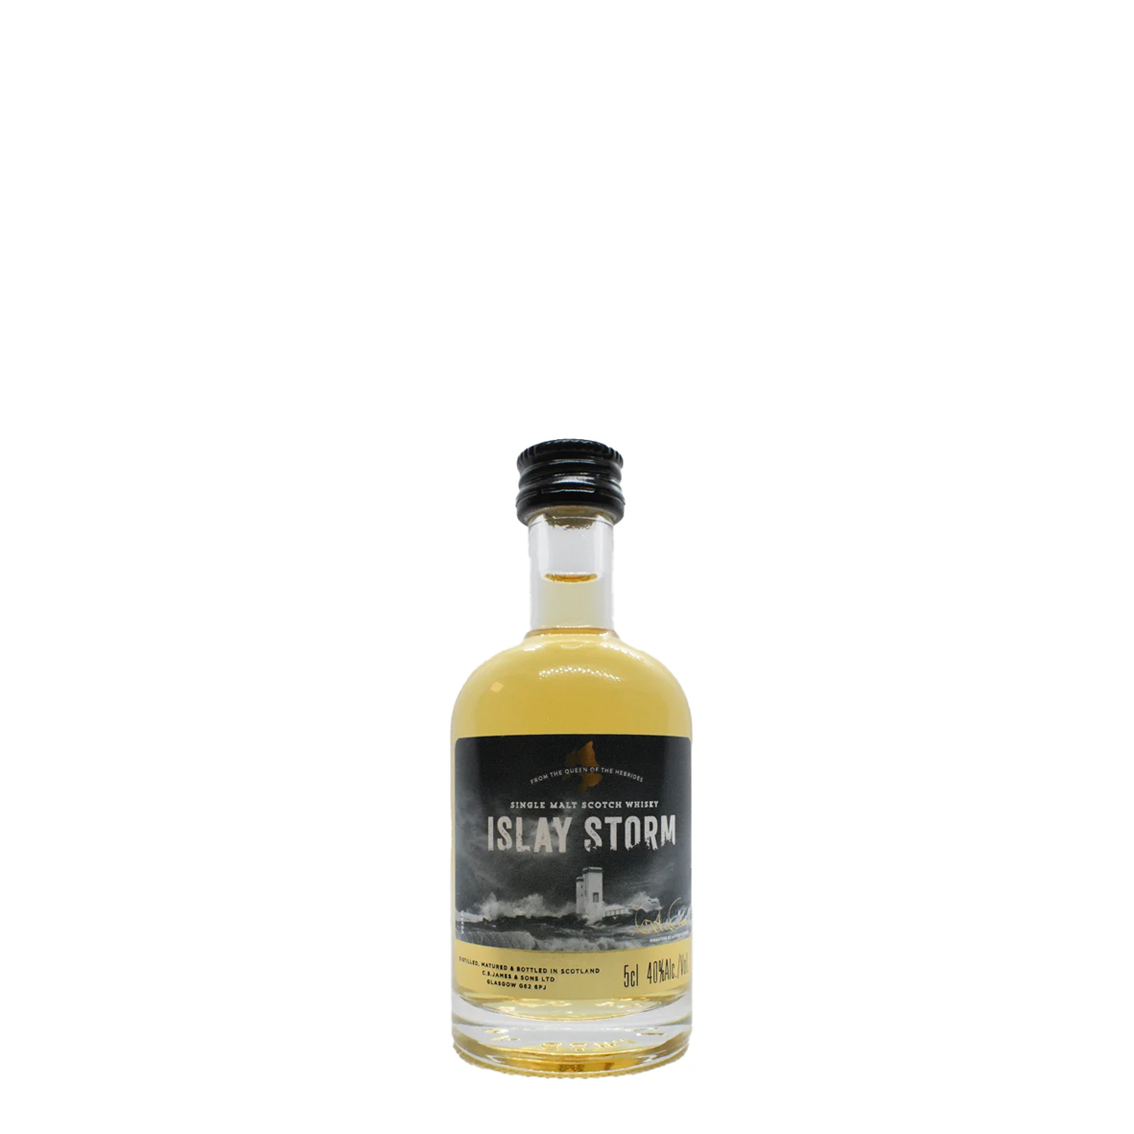 Islay Storm Single Islay Malt Whisky, 5cl - Miniature